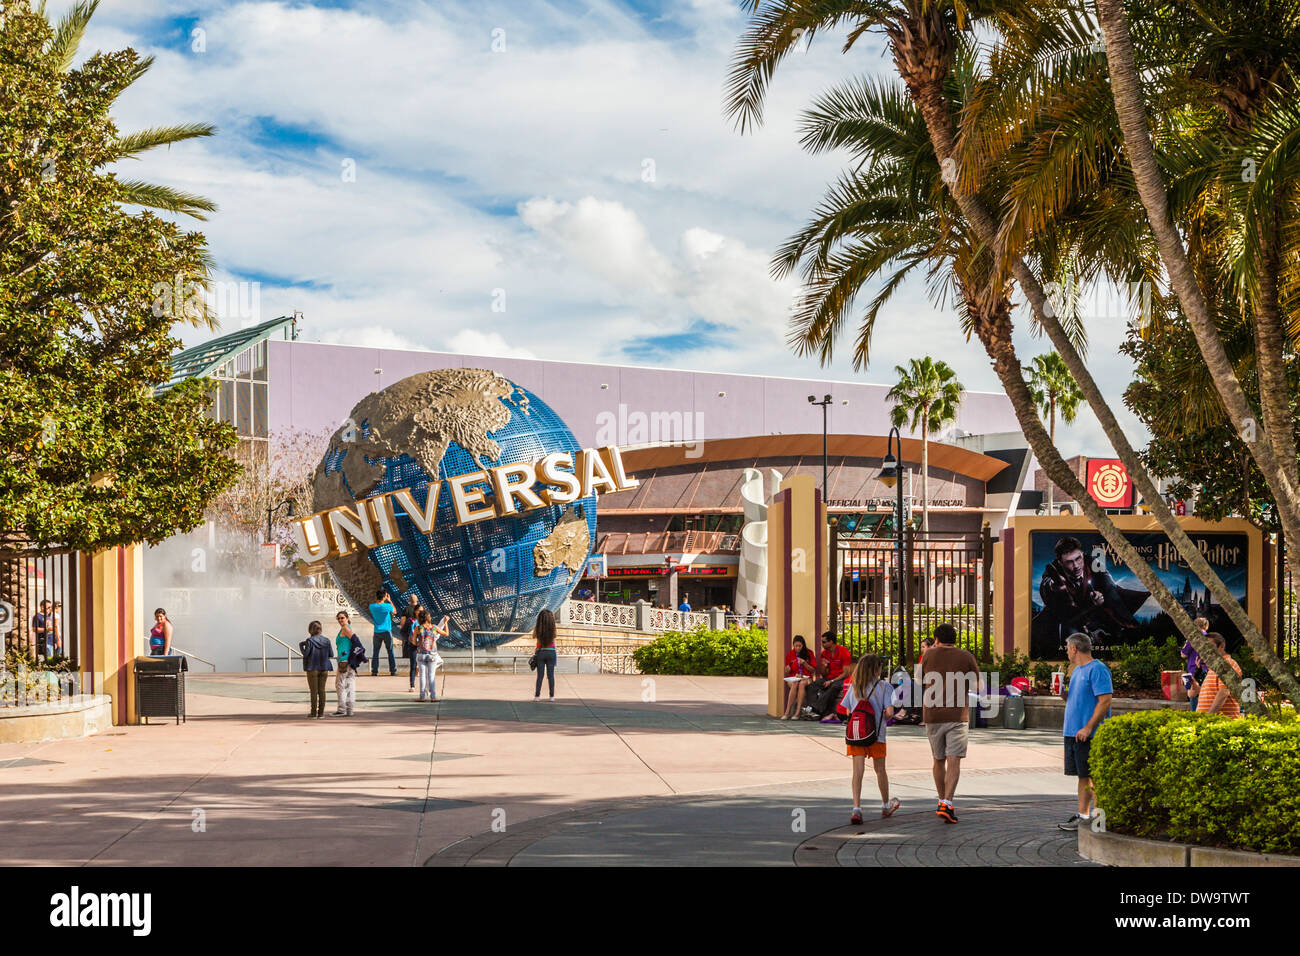 Gli ospiti del parco sosta per scattare foto dei mitici globo universale nei pressi dell'ingresso agli Universal Studios il parco a tema di Orlando Foto Stock